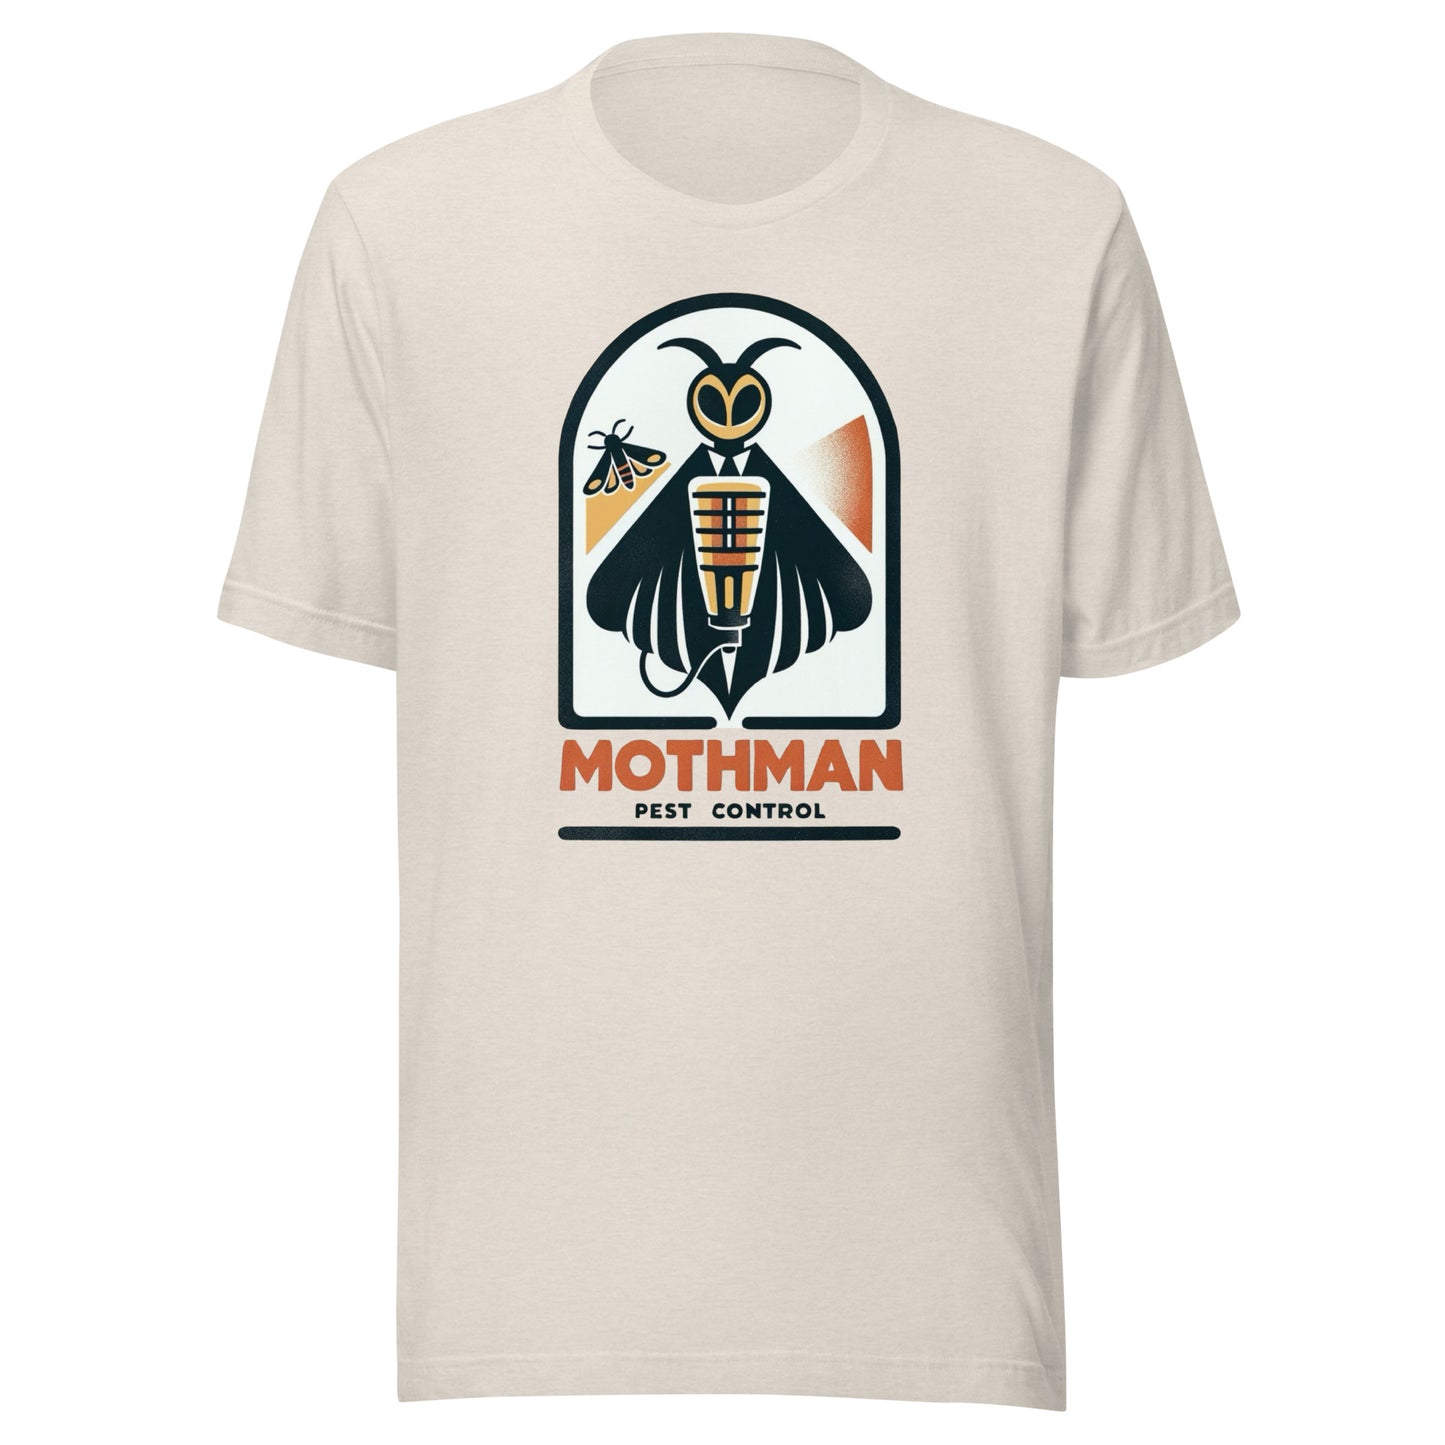 Mothman Pest Control - Mothman holding a bug zapper Unisex t-shirt